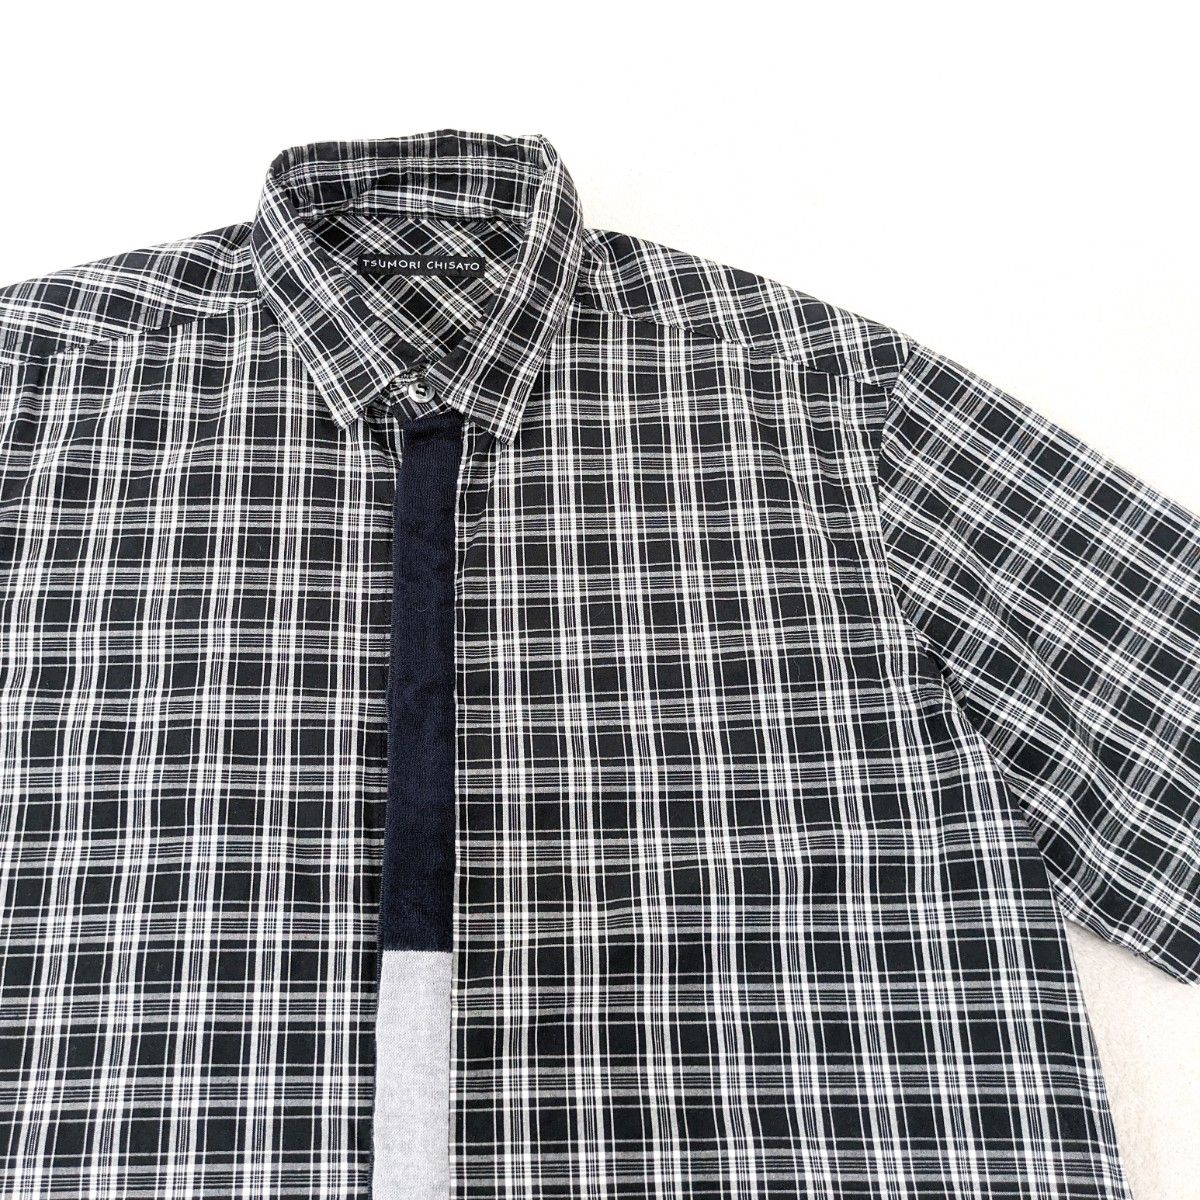 ★ TSUMORI CHISATO men's ★ネクタイシャツ チェック 半袖